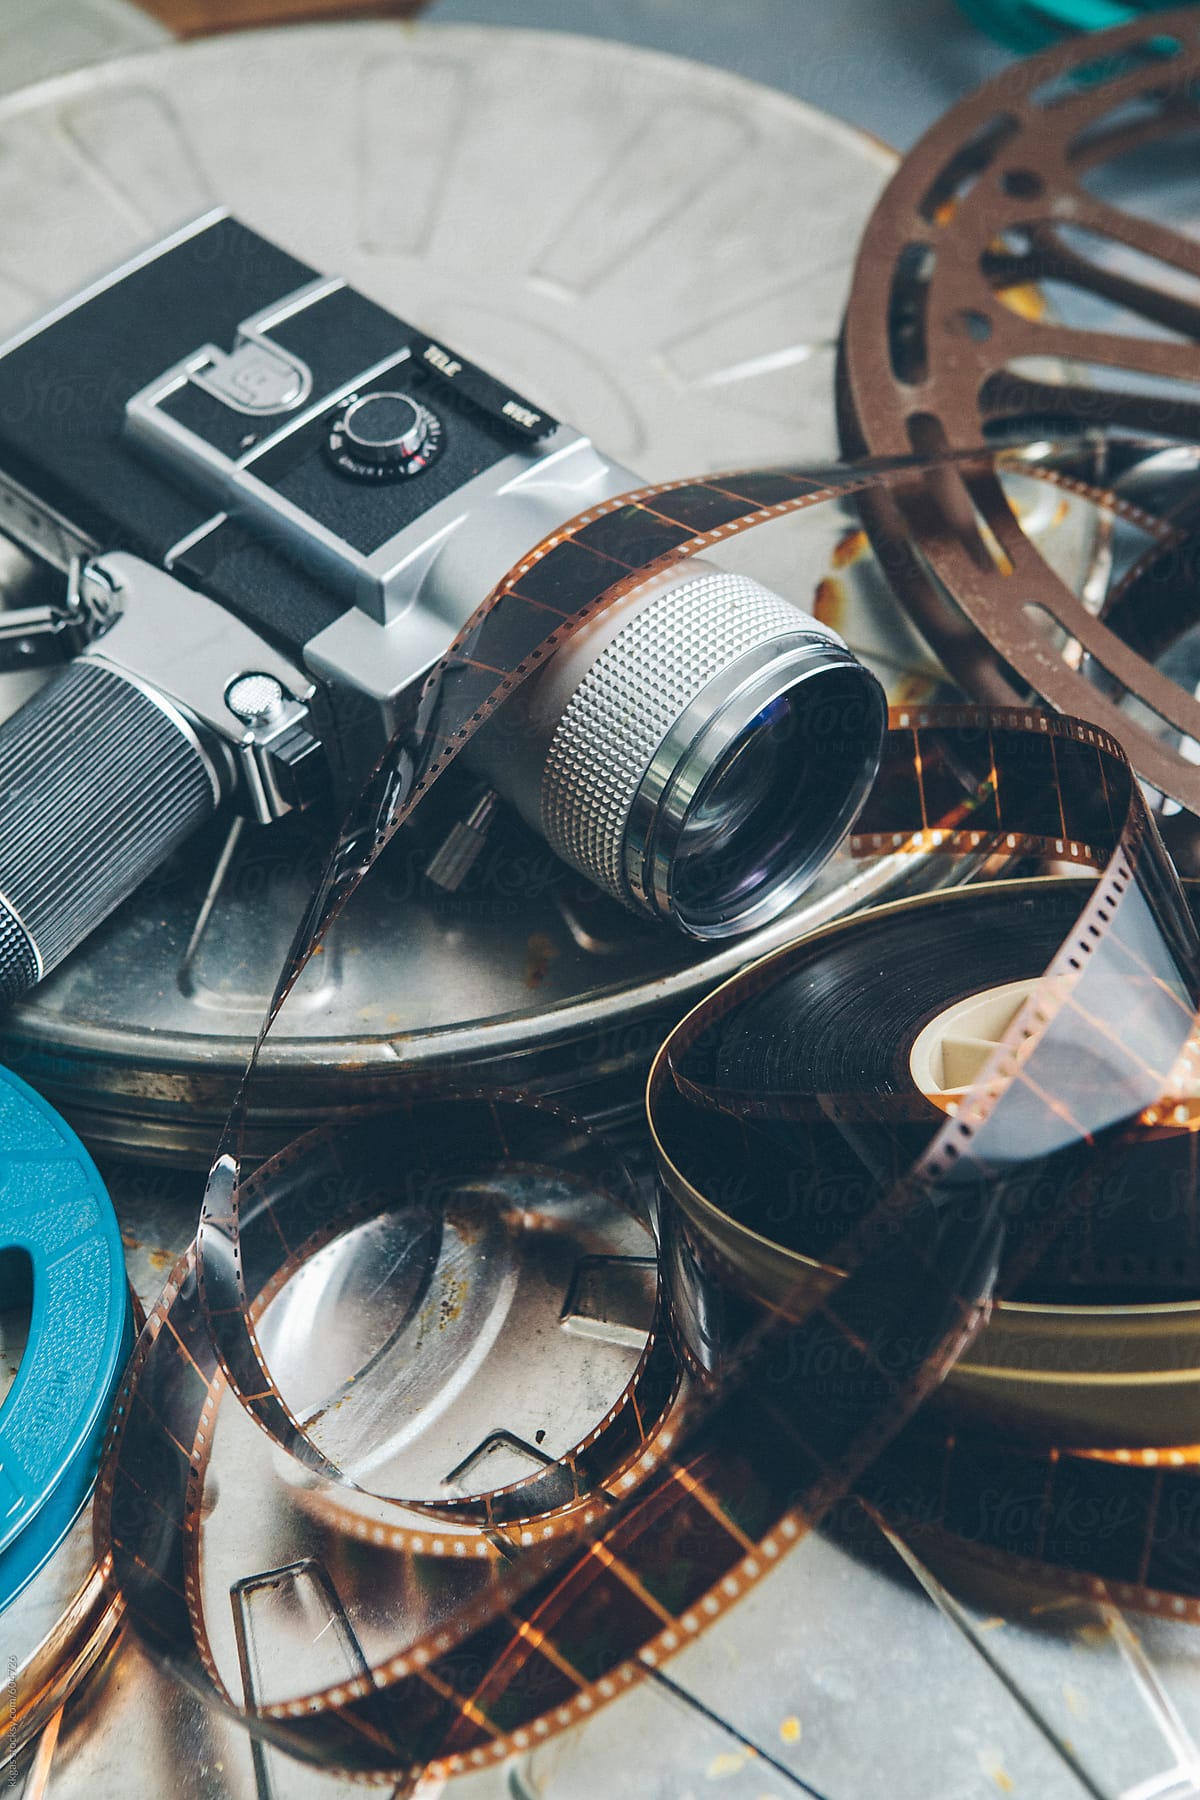 Cinema Cameras And Reels by Stocksy Contributor Kkgas - Stocksy